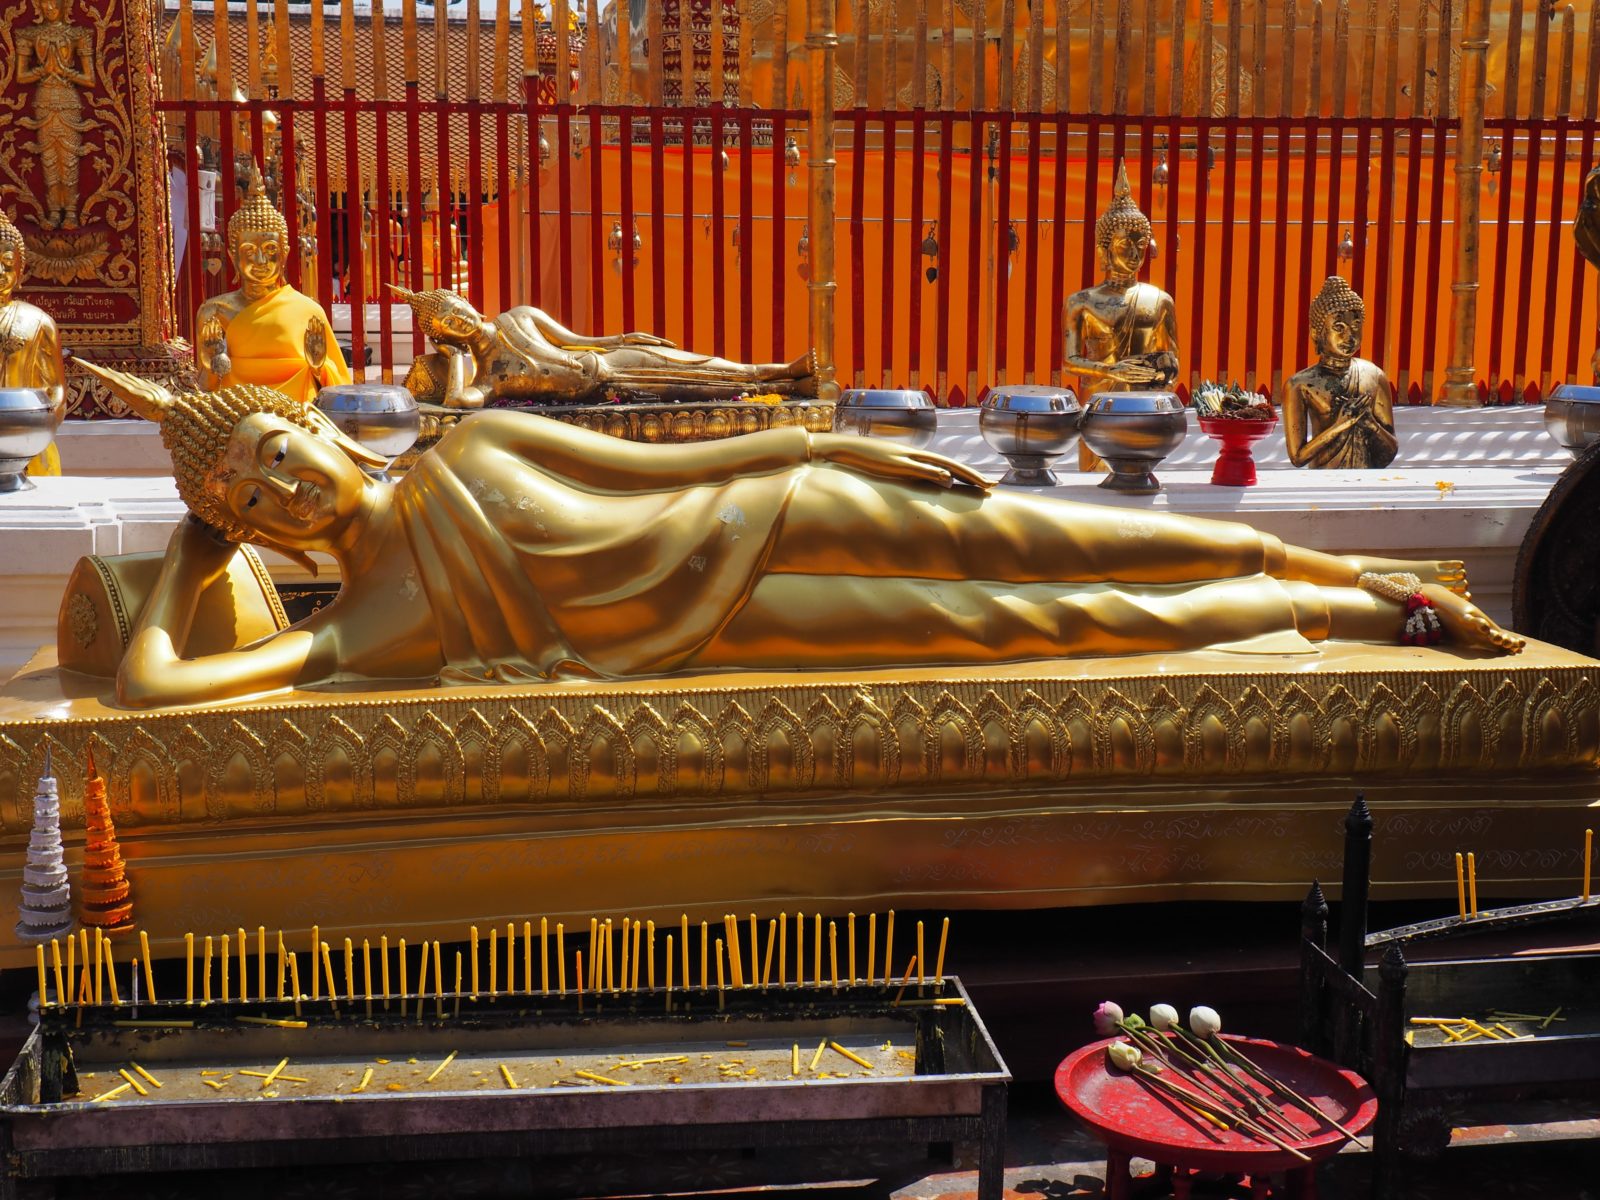 Buddhistický chrám Doi Suthep, Chiang Mai, Thajsko 2018